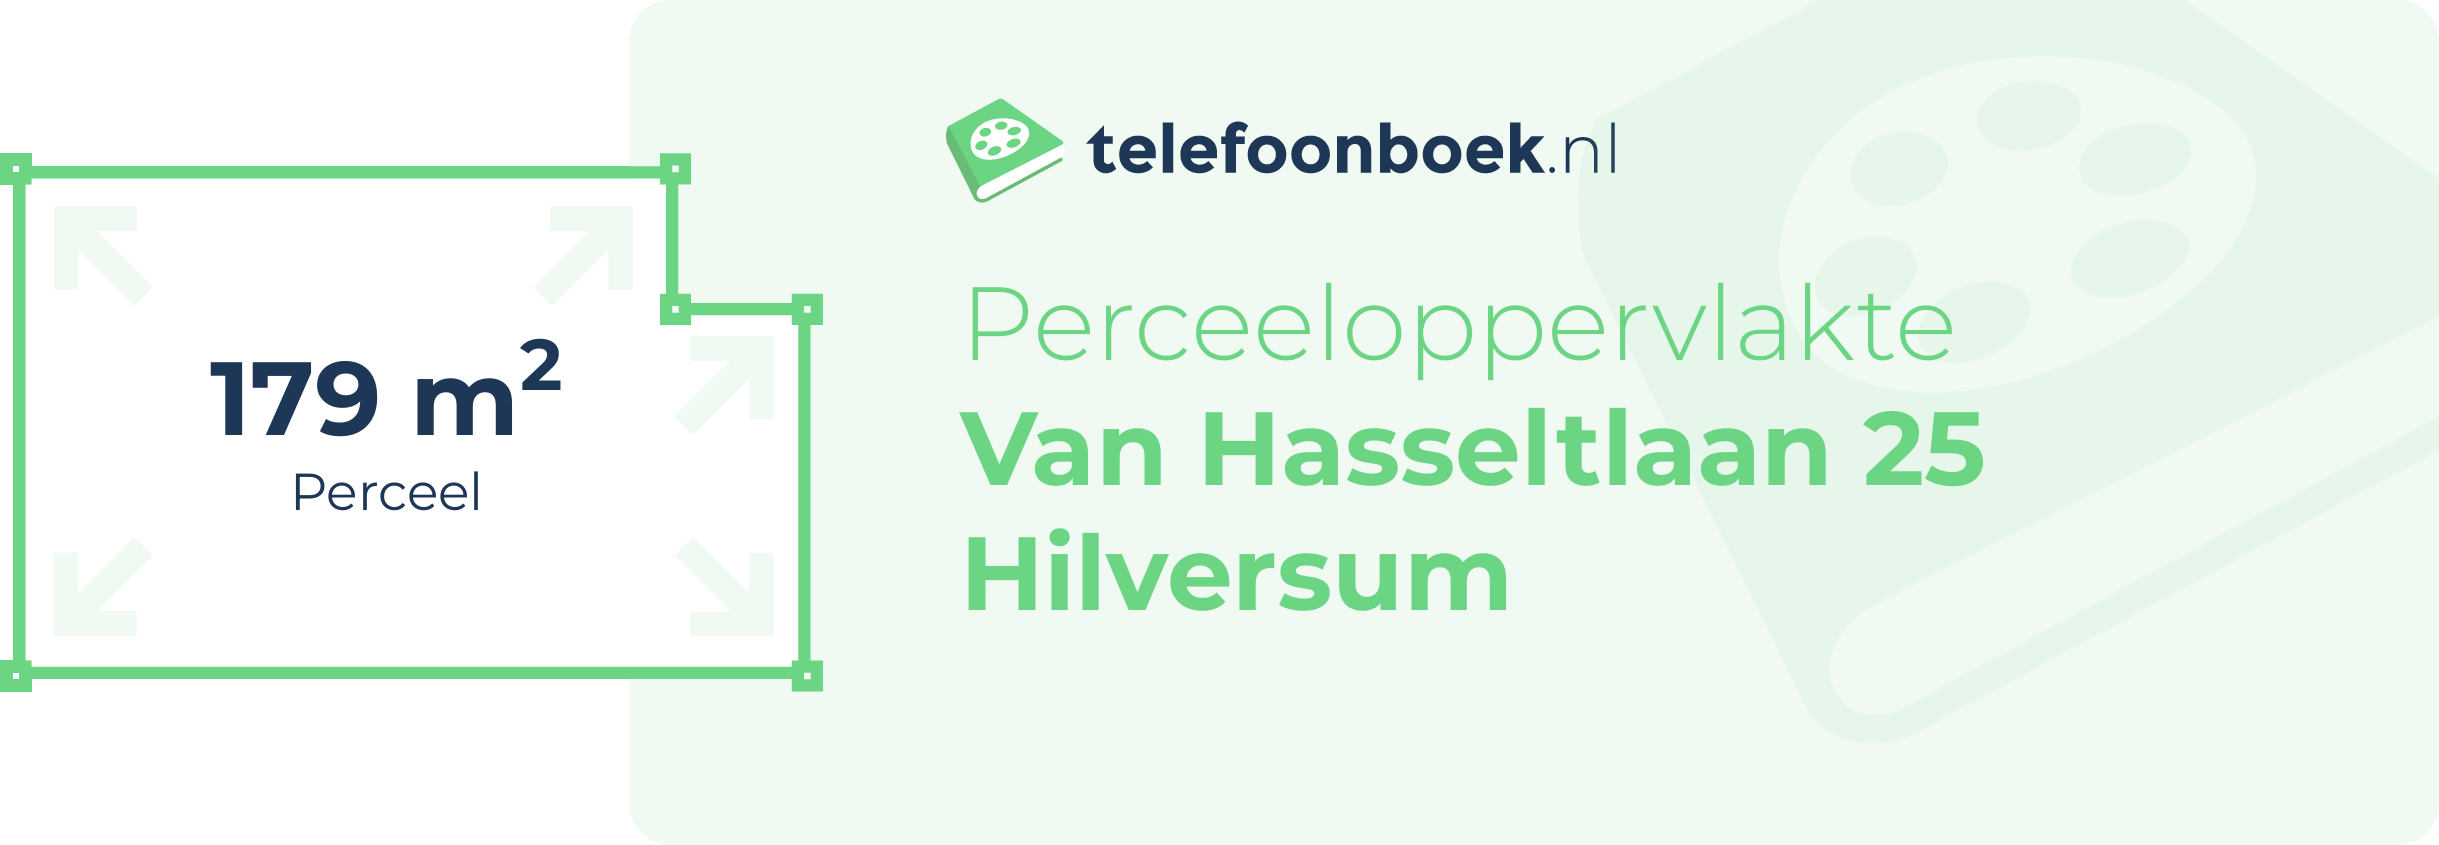 Perceeloppervlakte Van Hasseltlaan 25 Hilversum